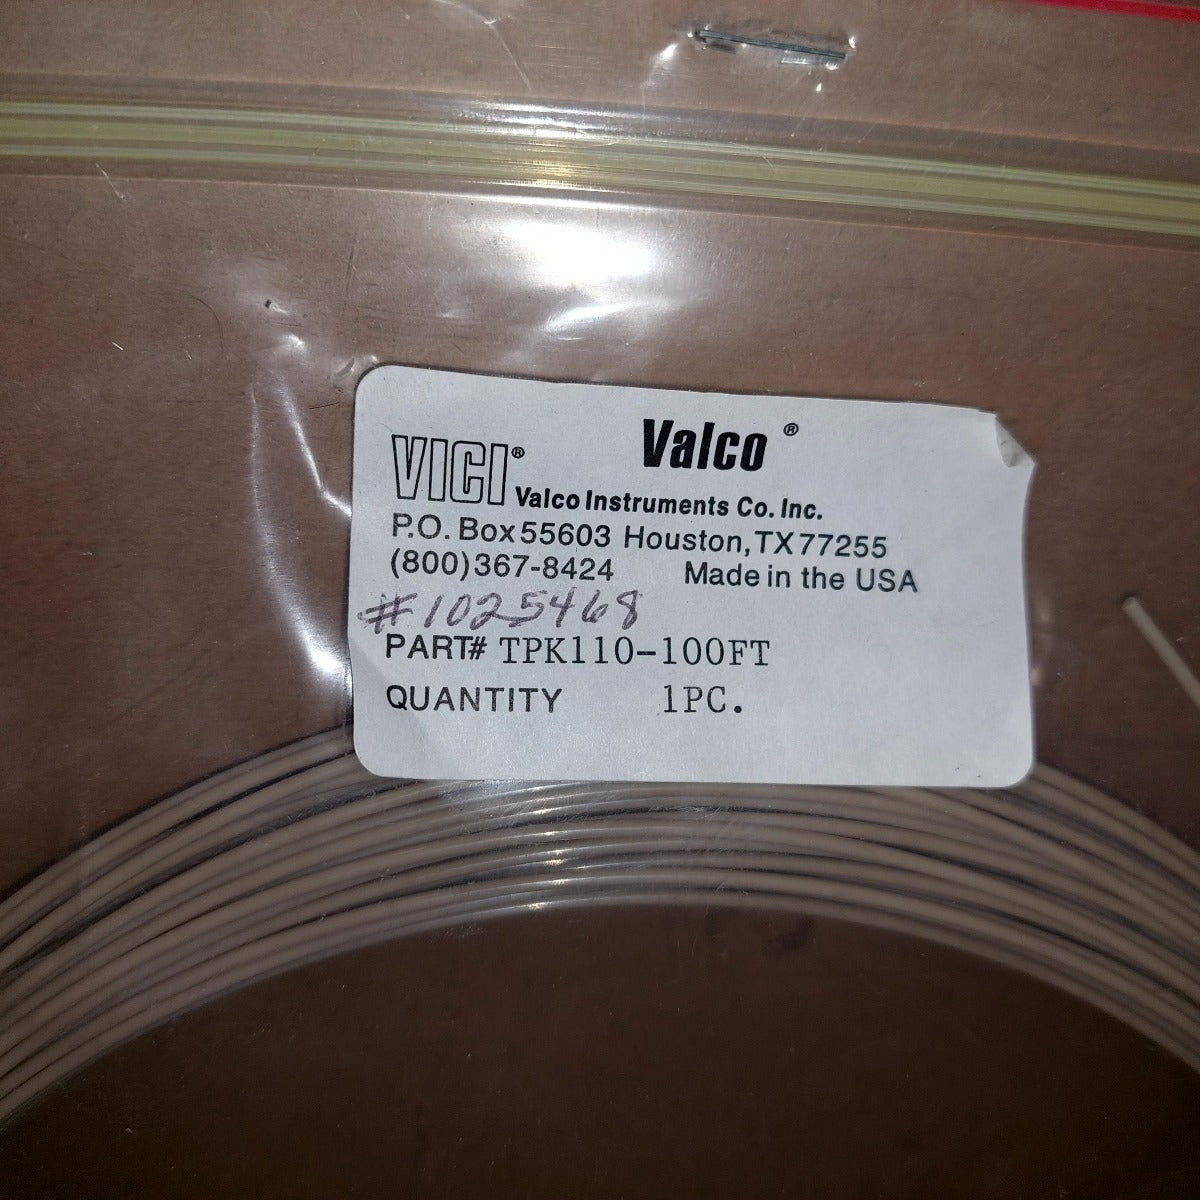 VICI Valco HPLC Tubing 1/16" OD, .010"/.25mm ID PEEK, TPK110-100FT 100' New